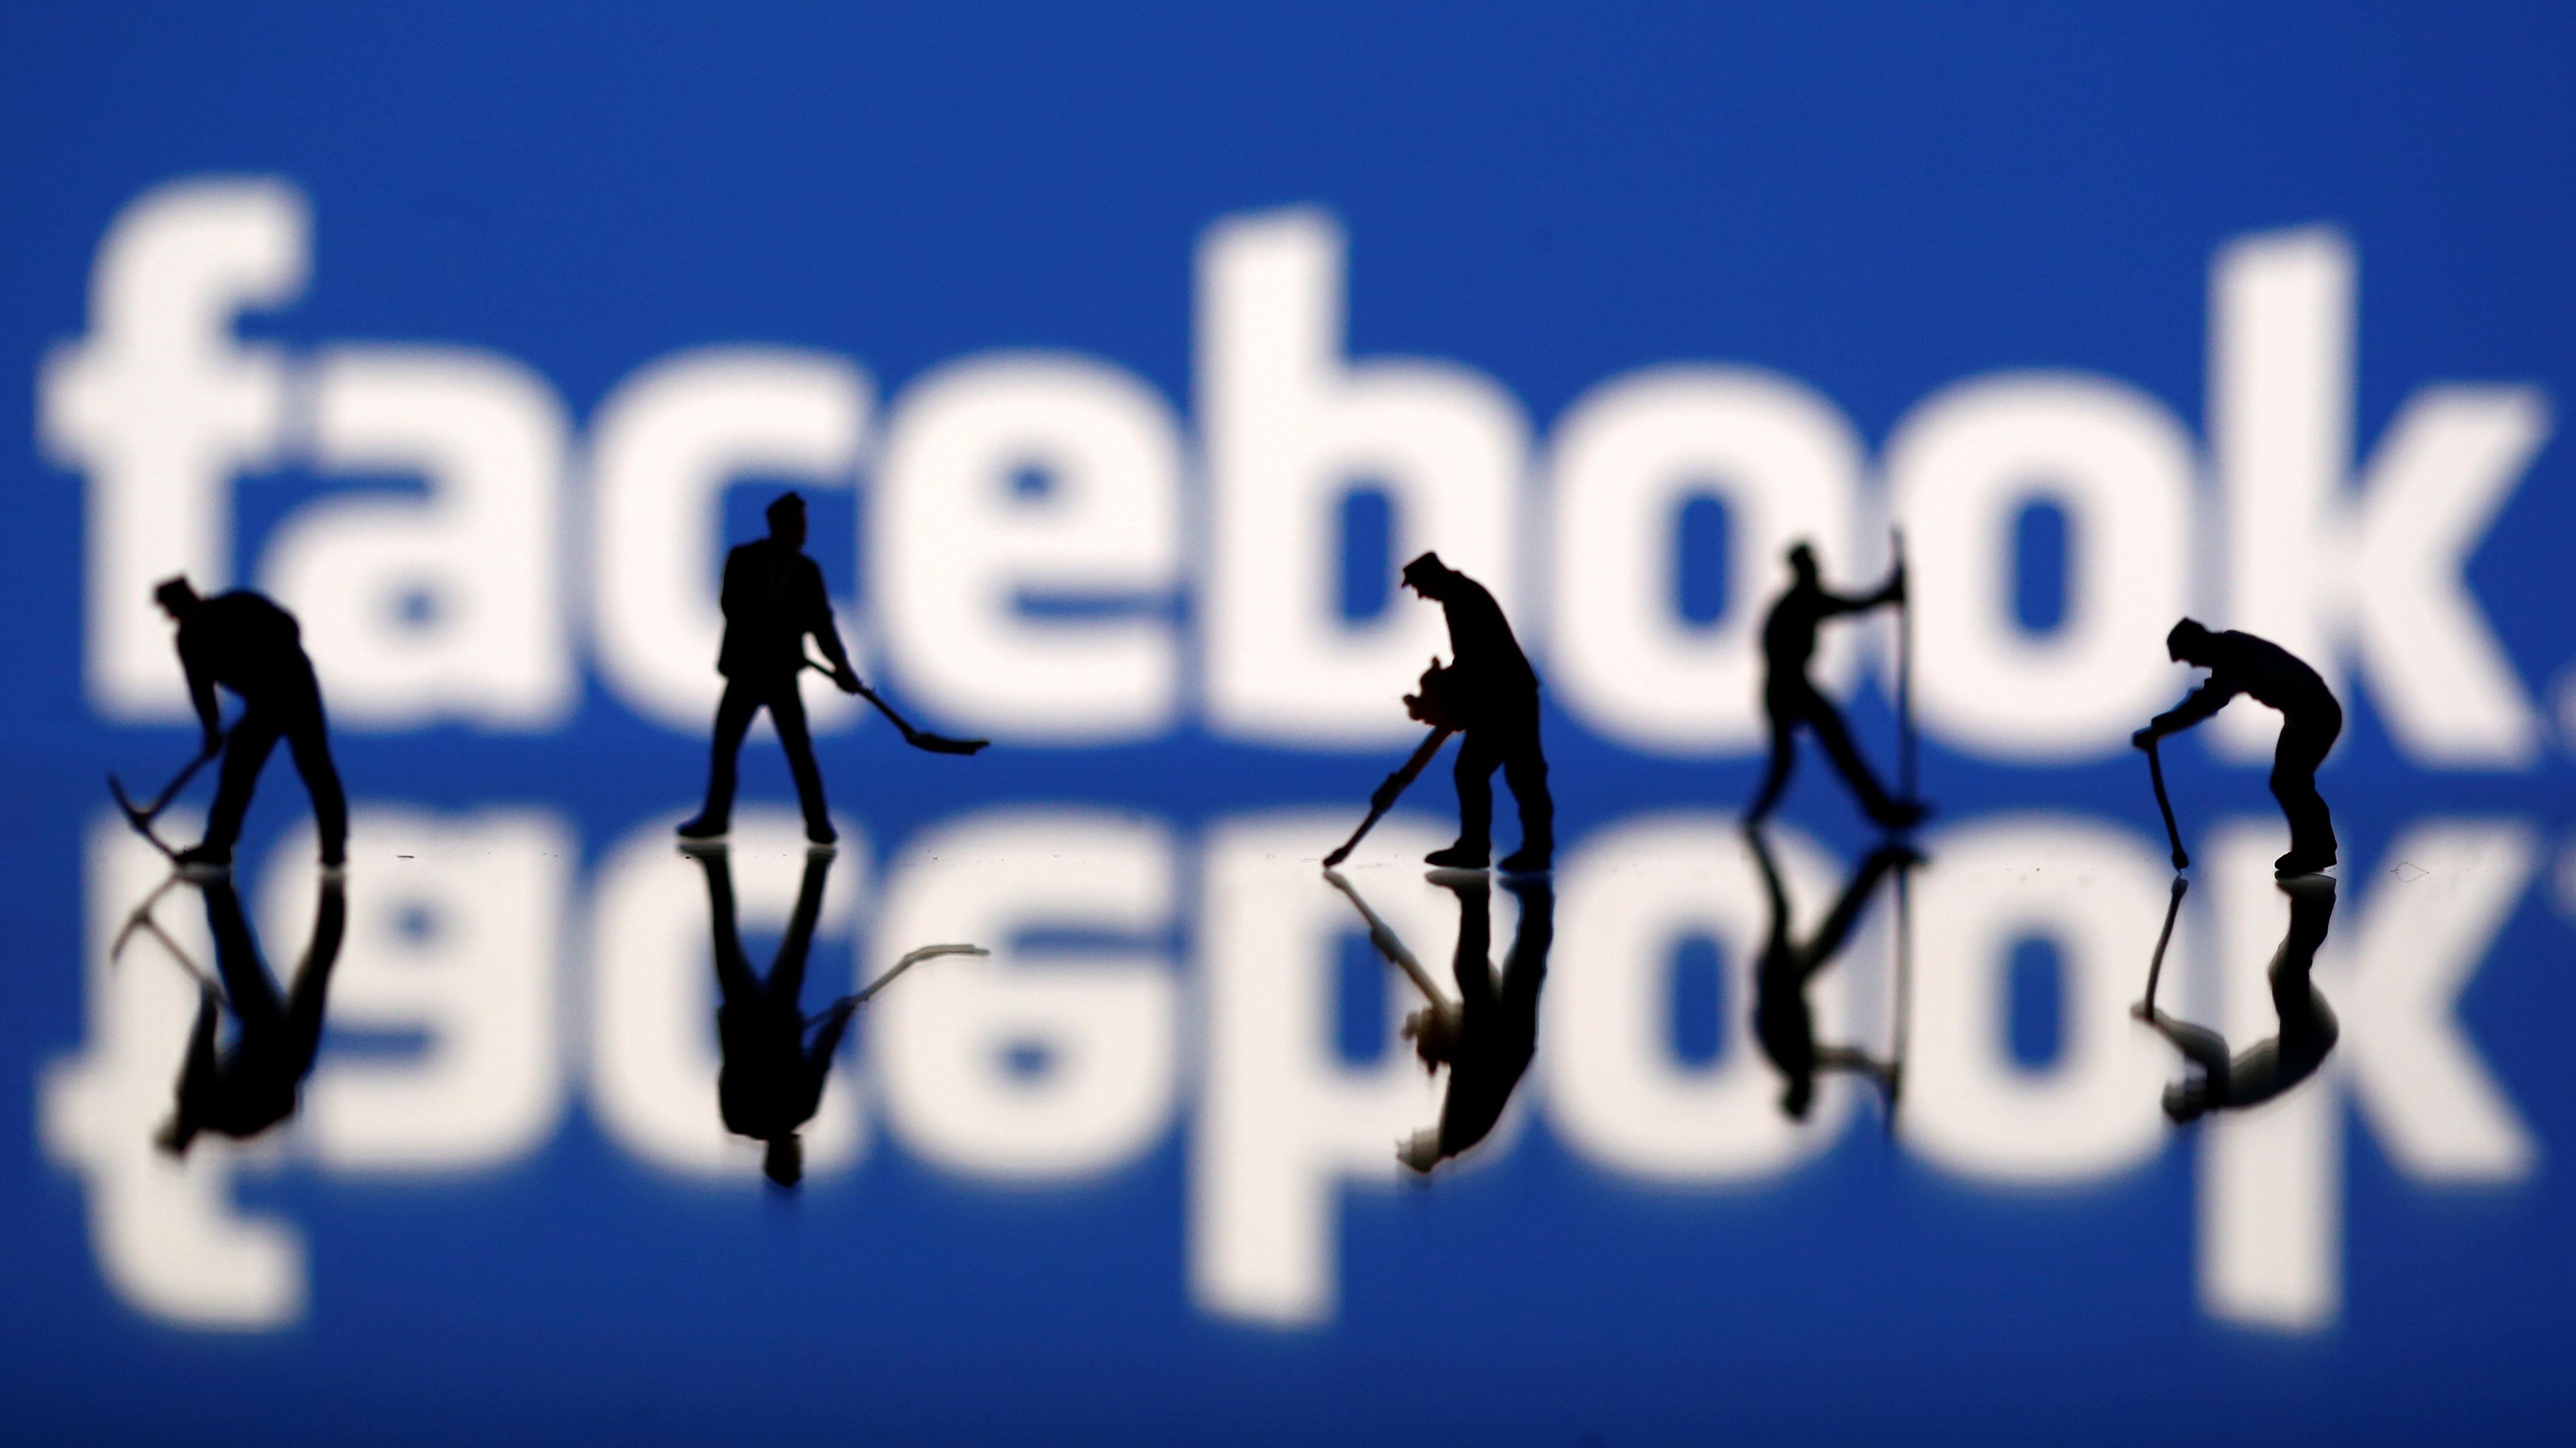 “Фейсбук пейпърс”: Социалната мрежа подхранва реч на омразата и фалшиви новини